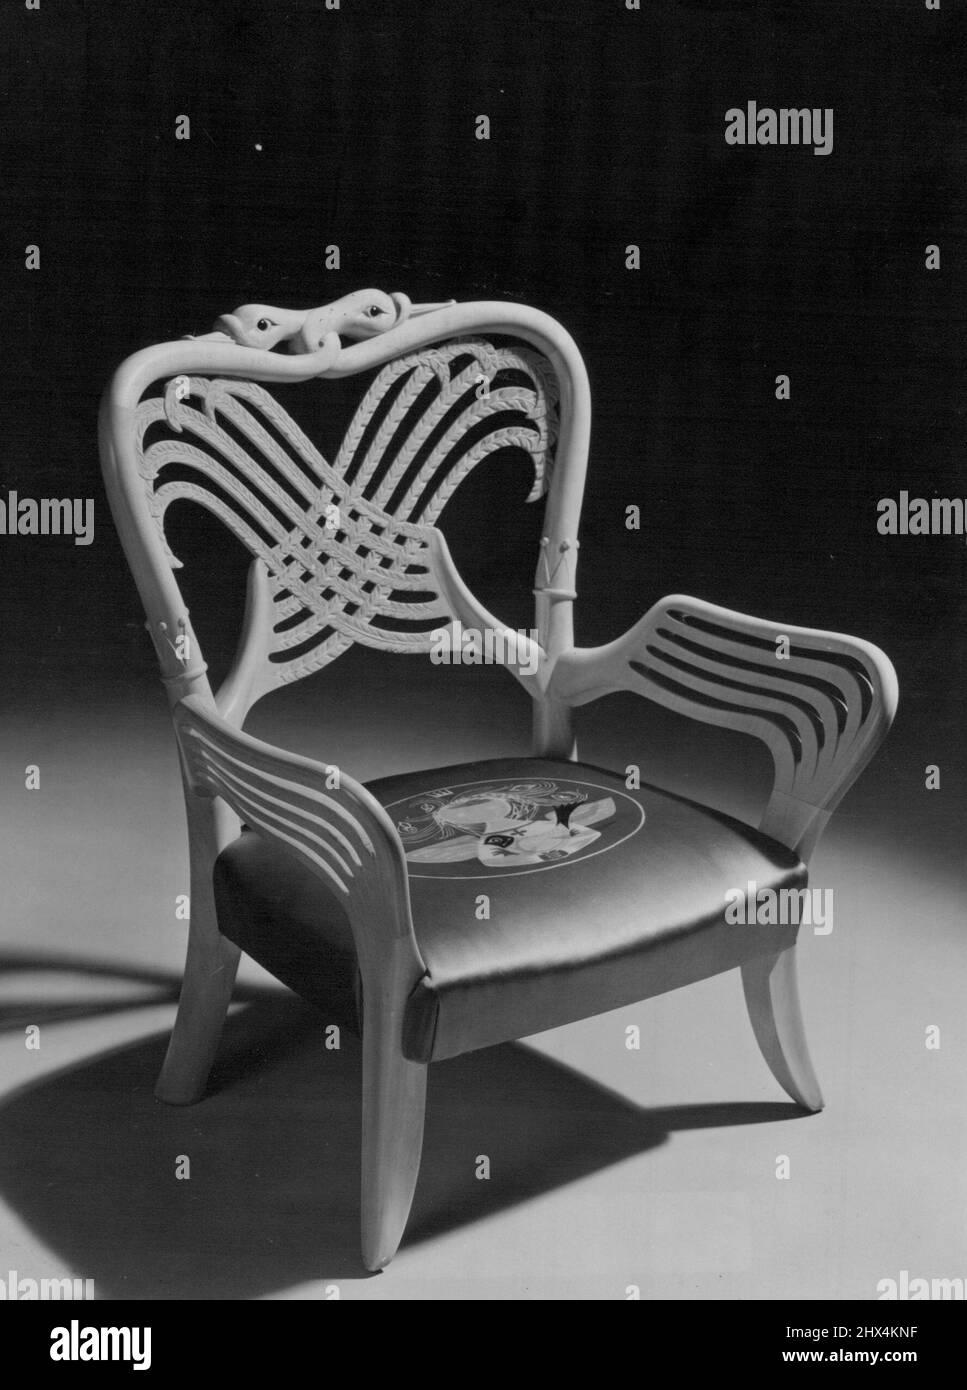 Une chaise digne d'Une princesse -- le cygne royal est le motif de cette jolie petite chaise, présentée à la princesse Anne par le Scottish Furniture manufactures, Limited, Et accepté par la Reine lors de son récent séjour à Holyrood. La chaise a été conçue par Basil Spence, l'architecte responsable de la conception de la nouvelle cathédrale de Coventry, Et est fait en Sycamore.grenats naturels forment les yeux des cygnes, dont les ailes entrelacées forment le dos et les bras de la chaise, chaque oiseau a une couronne autour de son cou.les ailes sont sculptées en contreplaqué laminé, donnant la force mais conservant la délicatesse et les lumières Banque D'Images